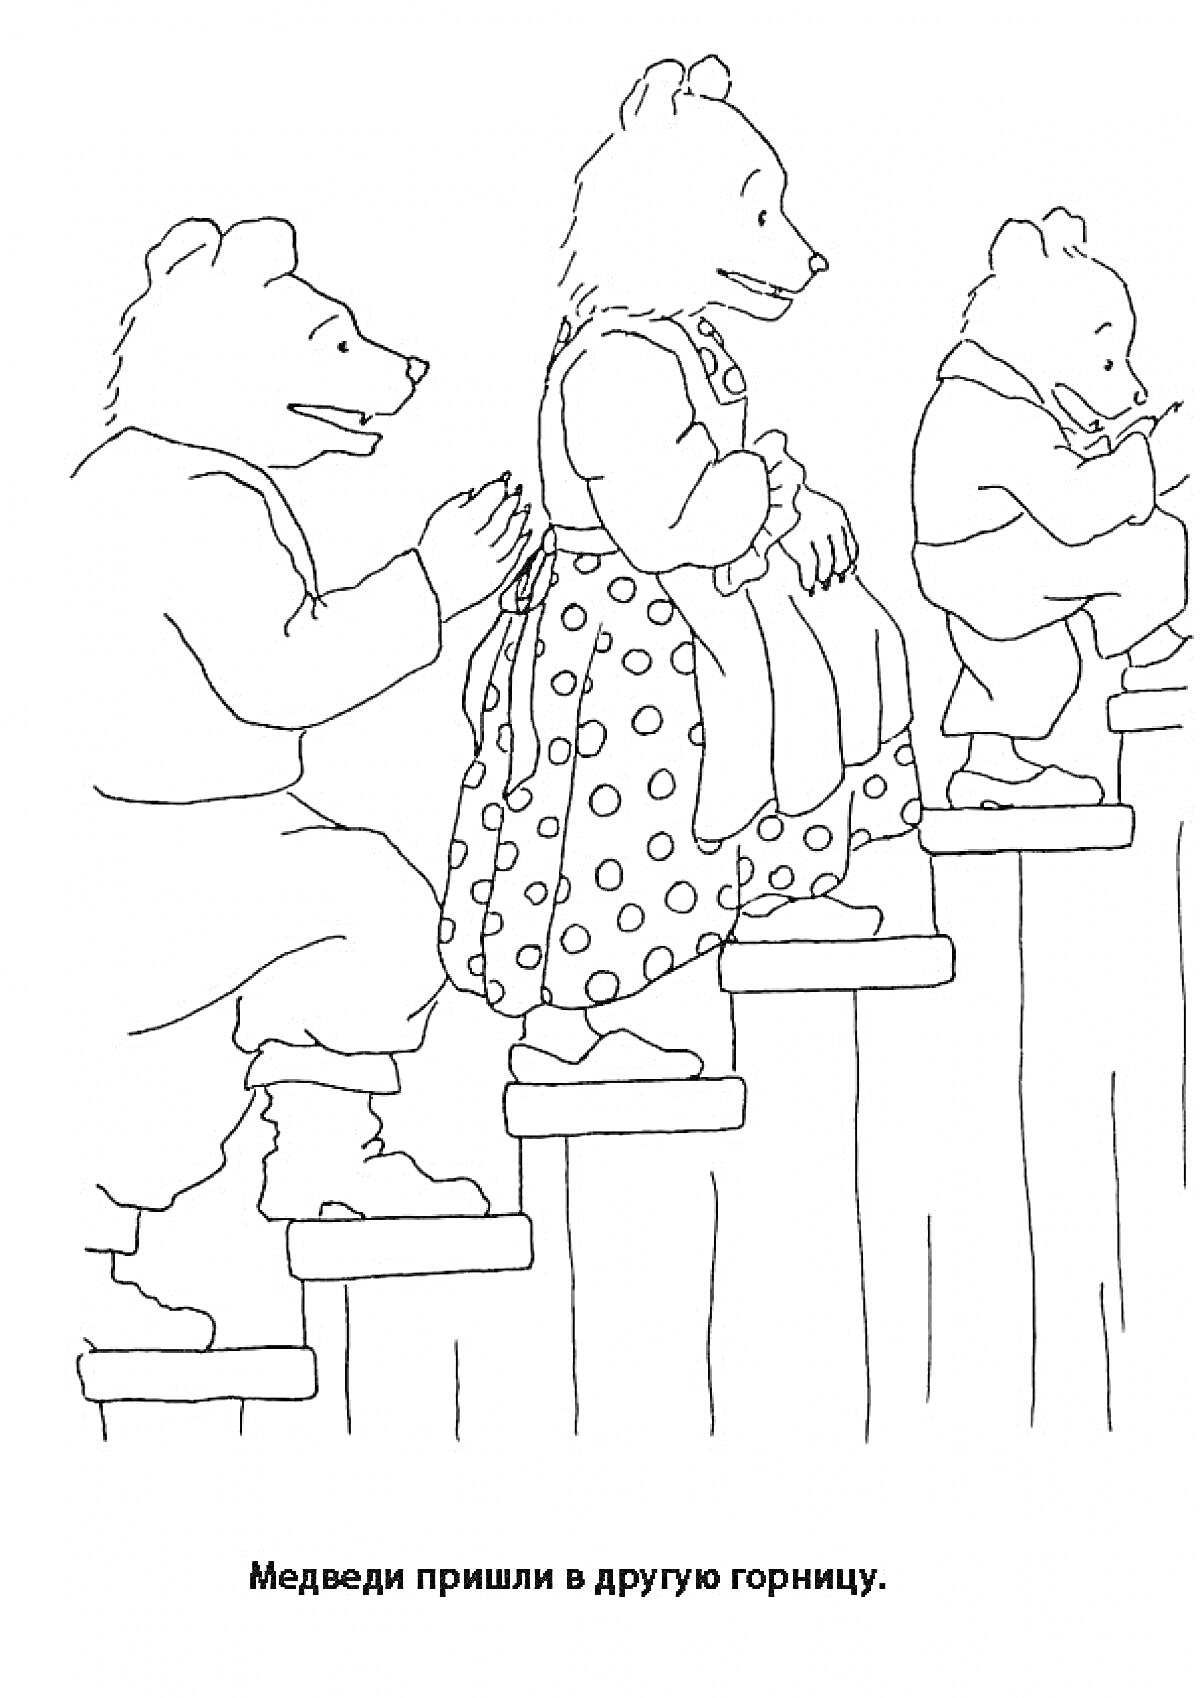 Раскраска Три медведя поднимаются по ступенькам в другую горницу